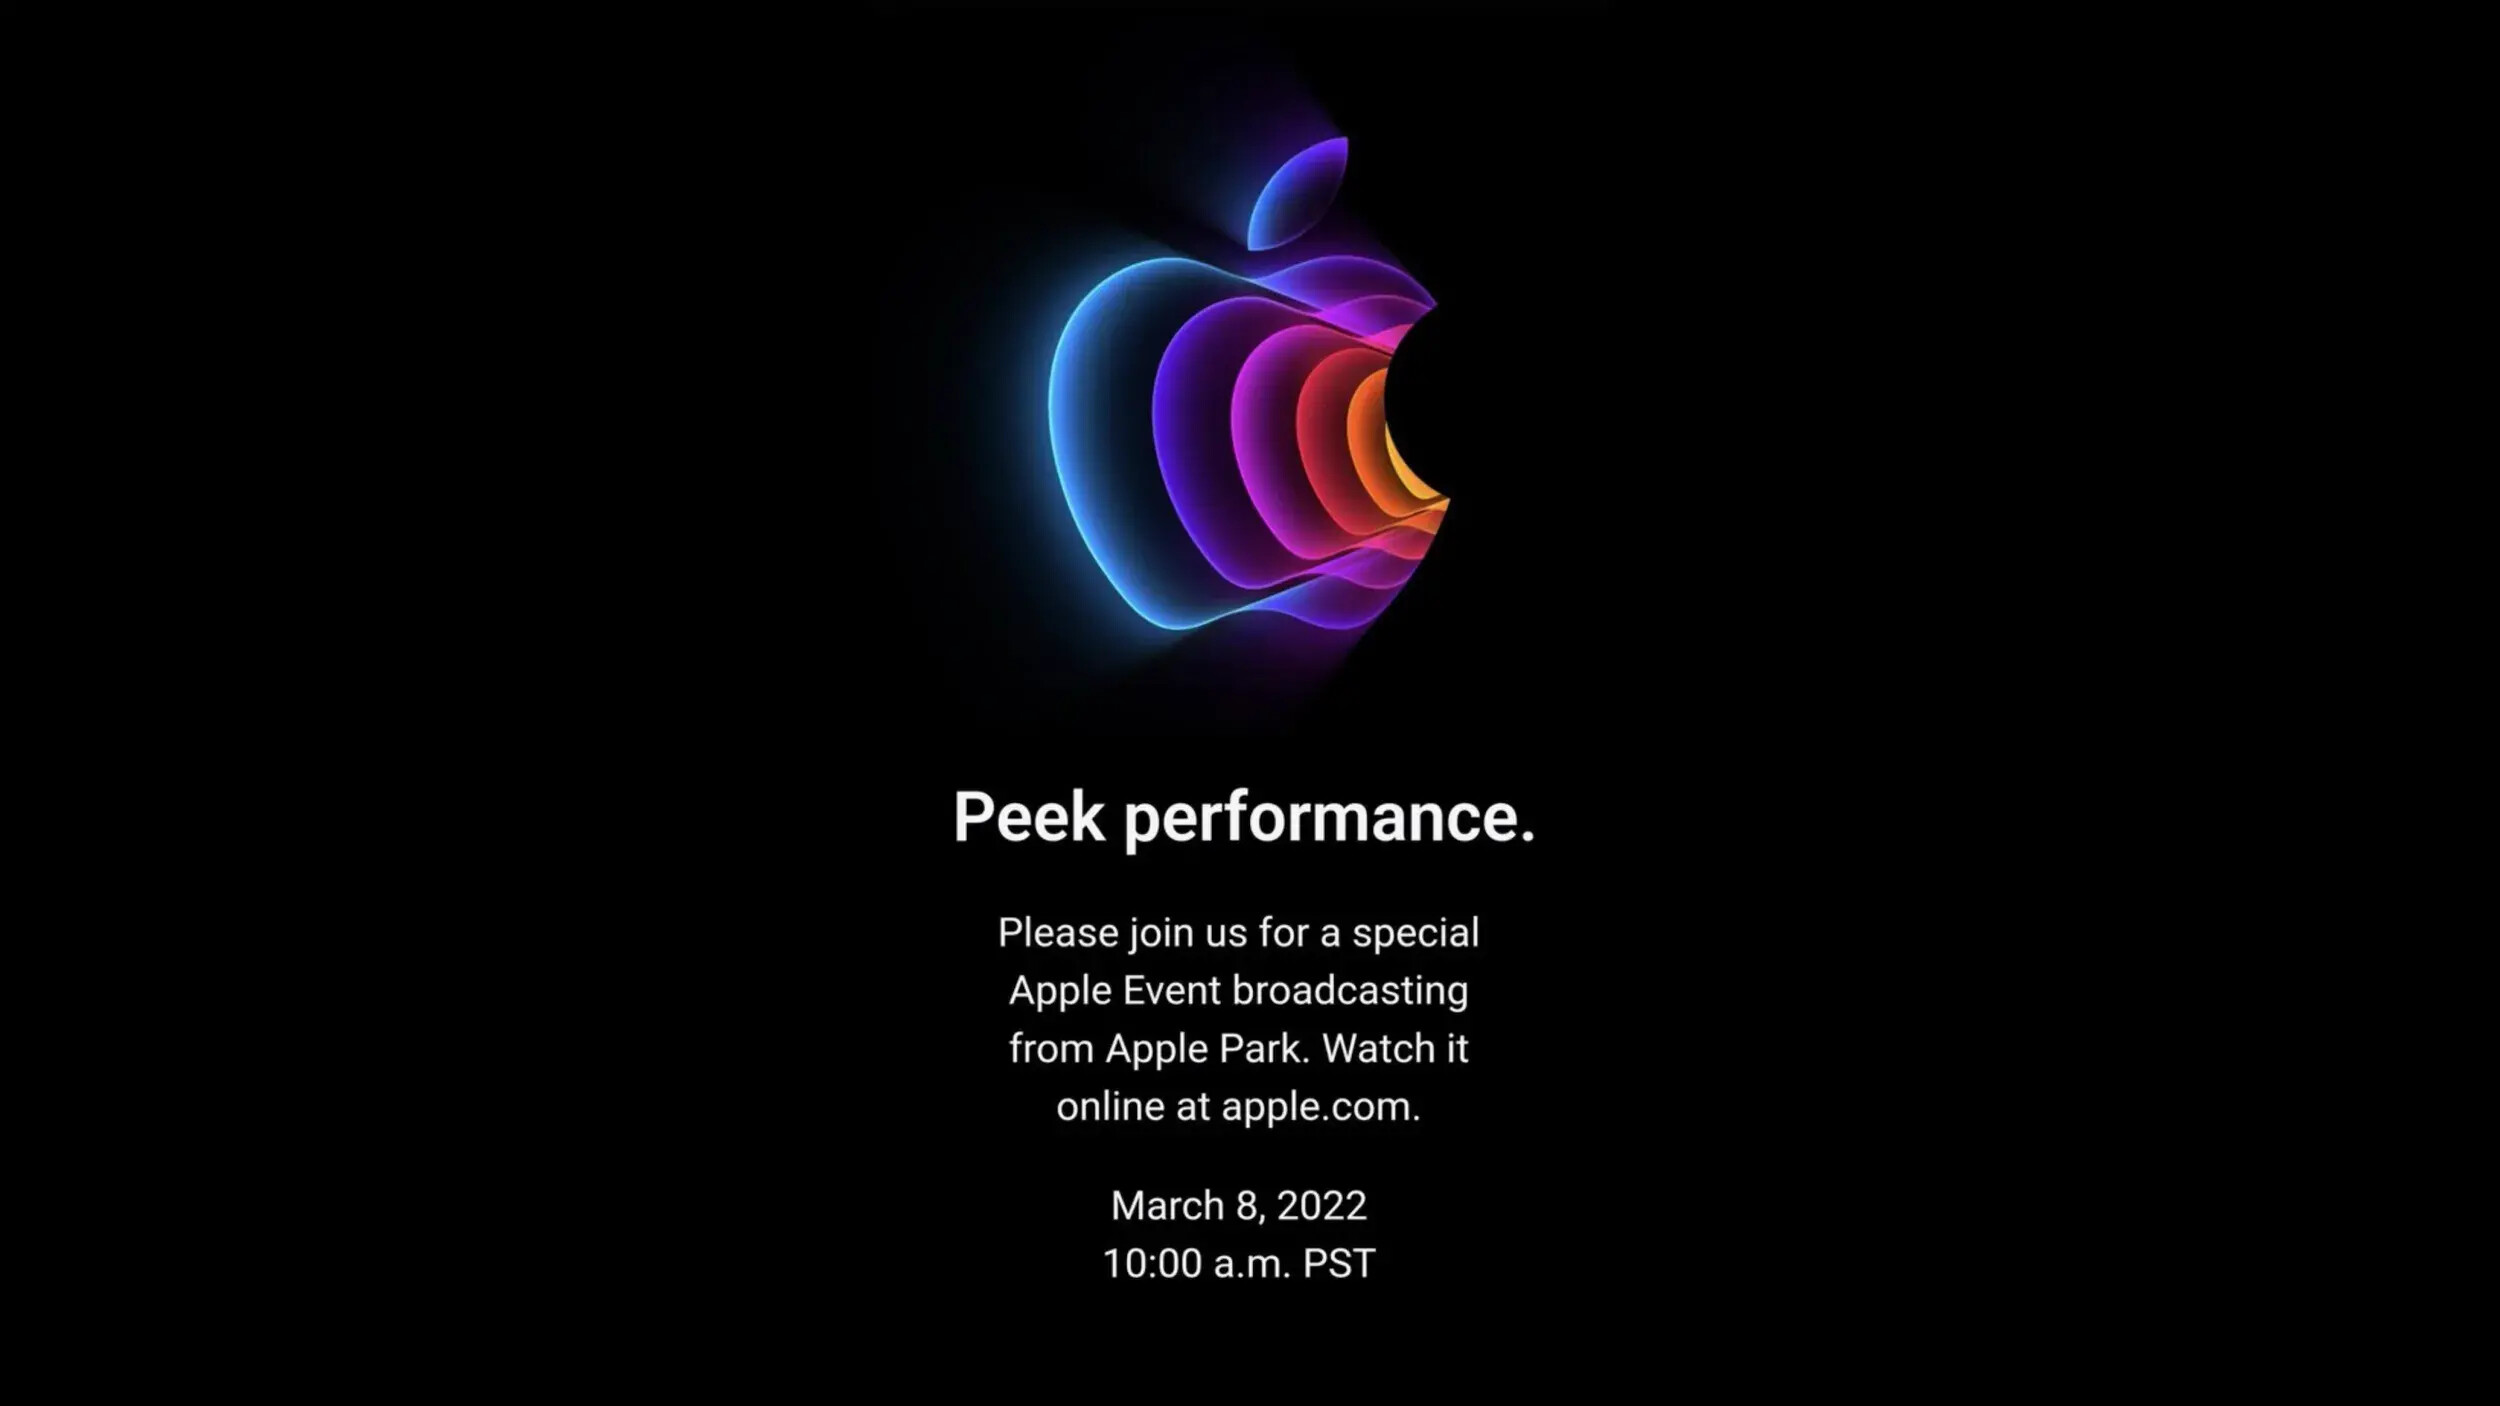 Belki de Eylül 2022'deki son Apple etkinliğinin logosu saklanmalıydı?  - iPhone 14, iPhone 13S olacak: Steve Jobs'un başyapıtı zirveye ulaştı, ancak Apple, Max'i yapıyor